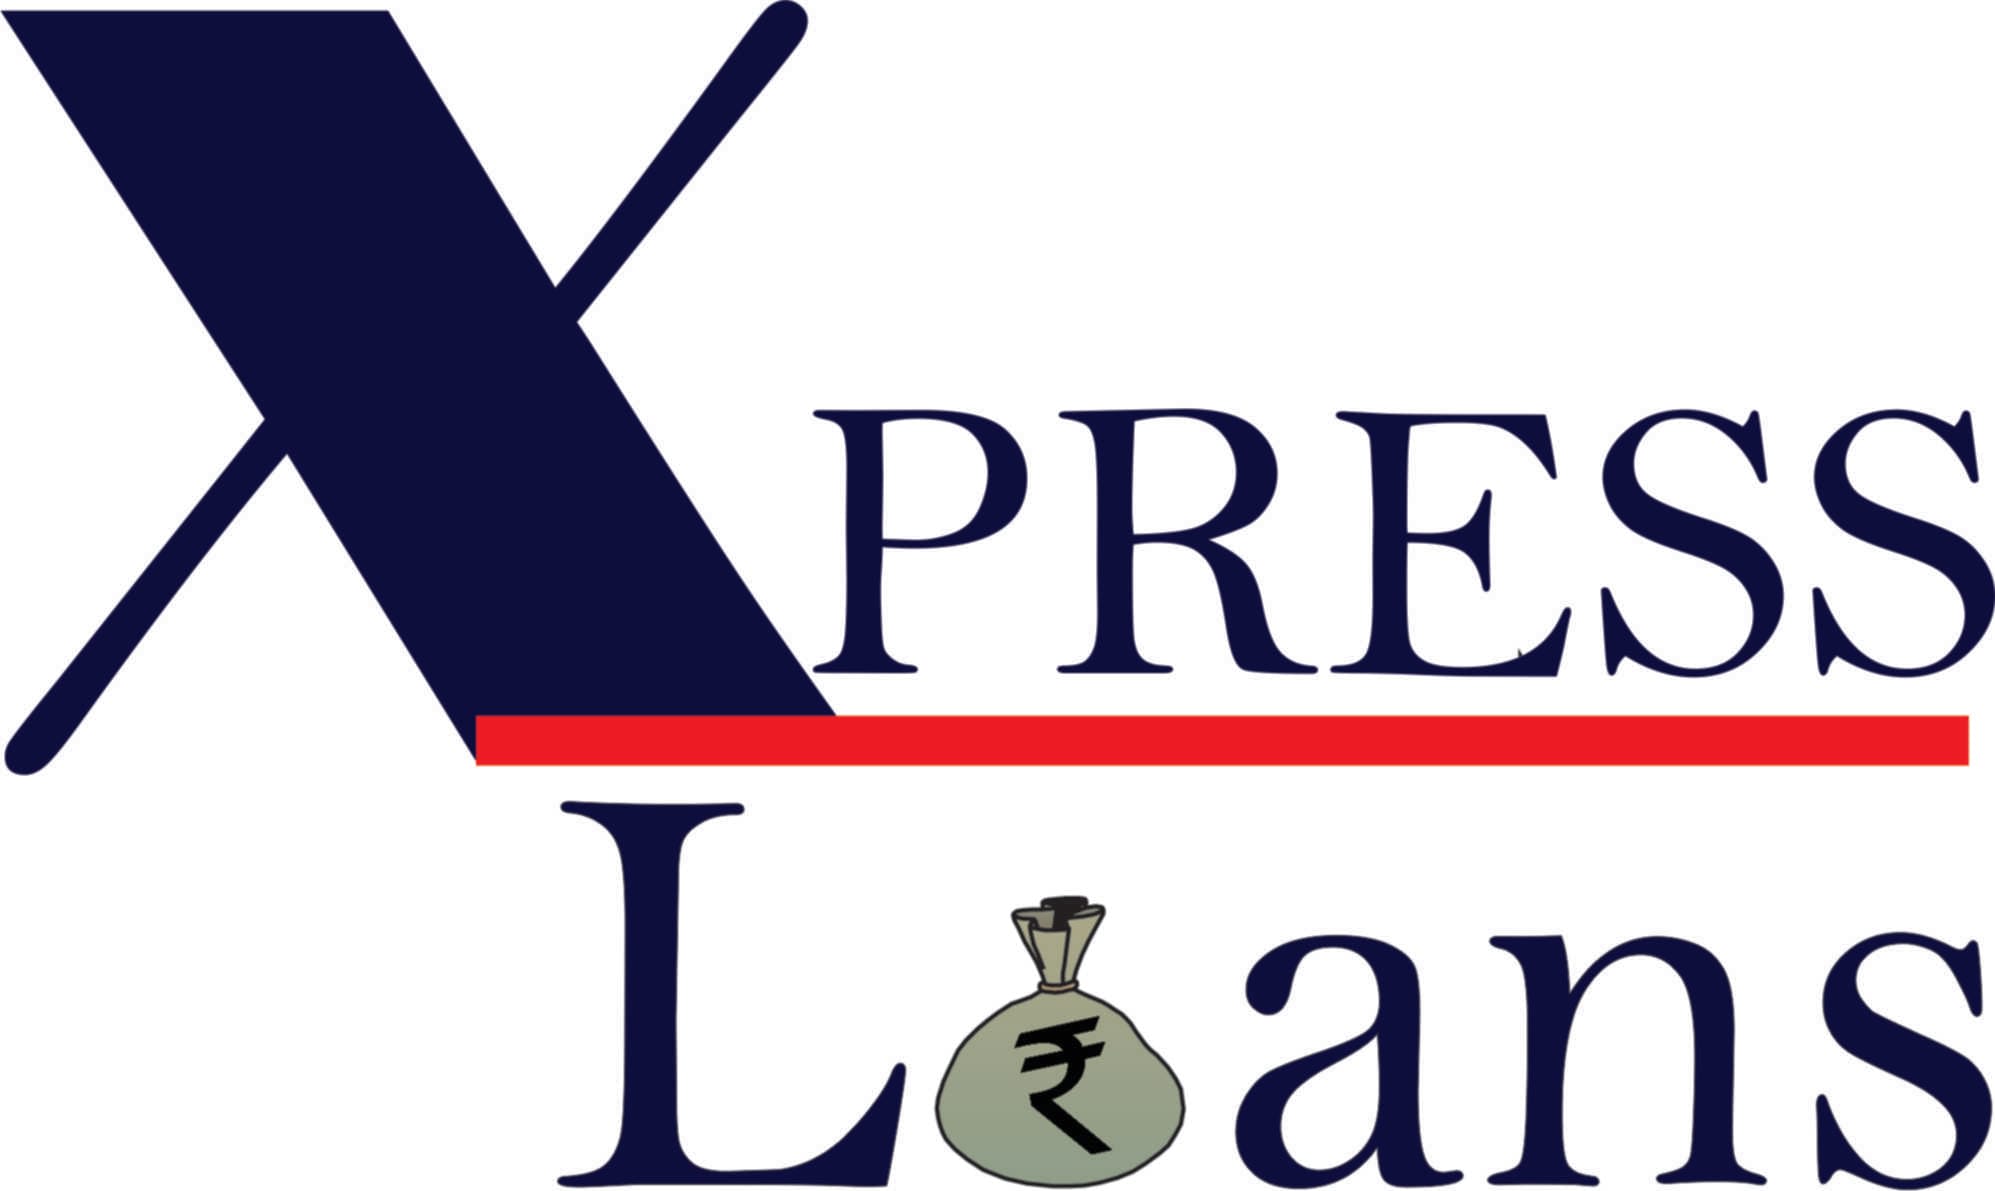 Xpress Capital Services LLP